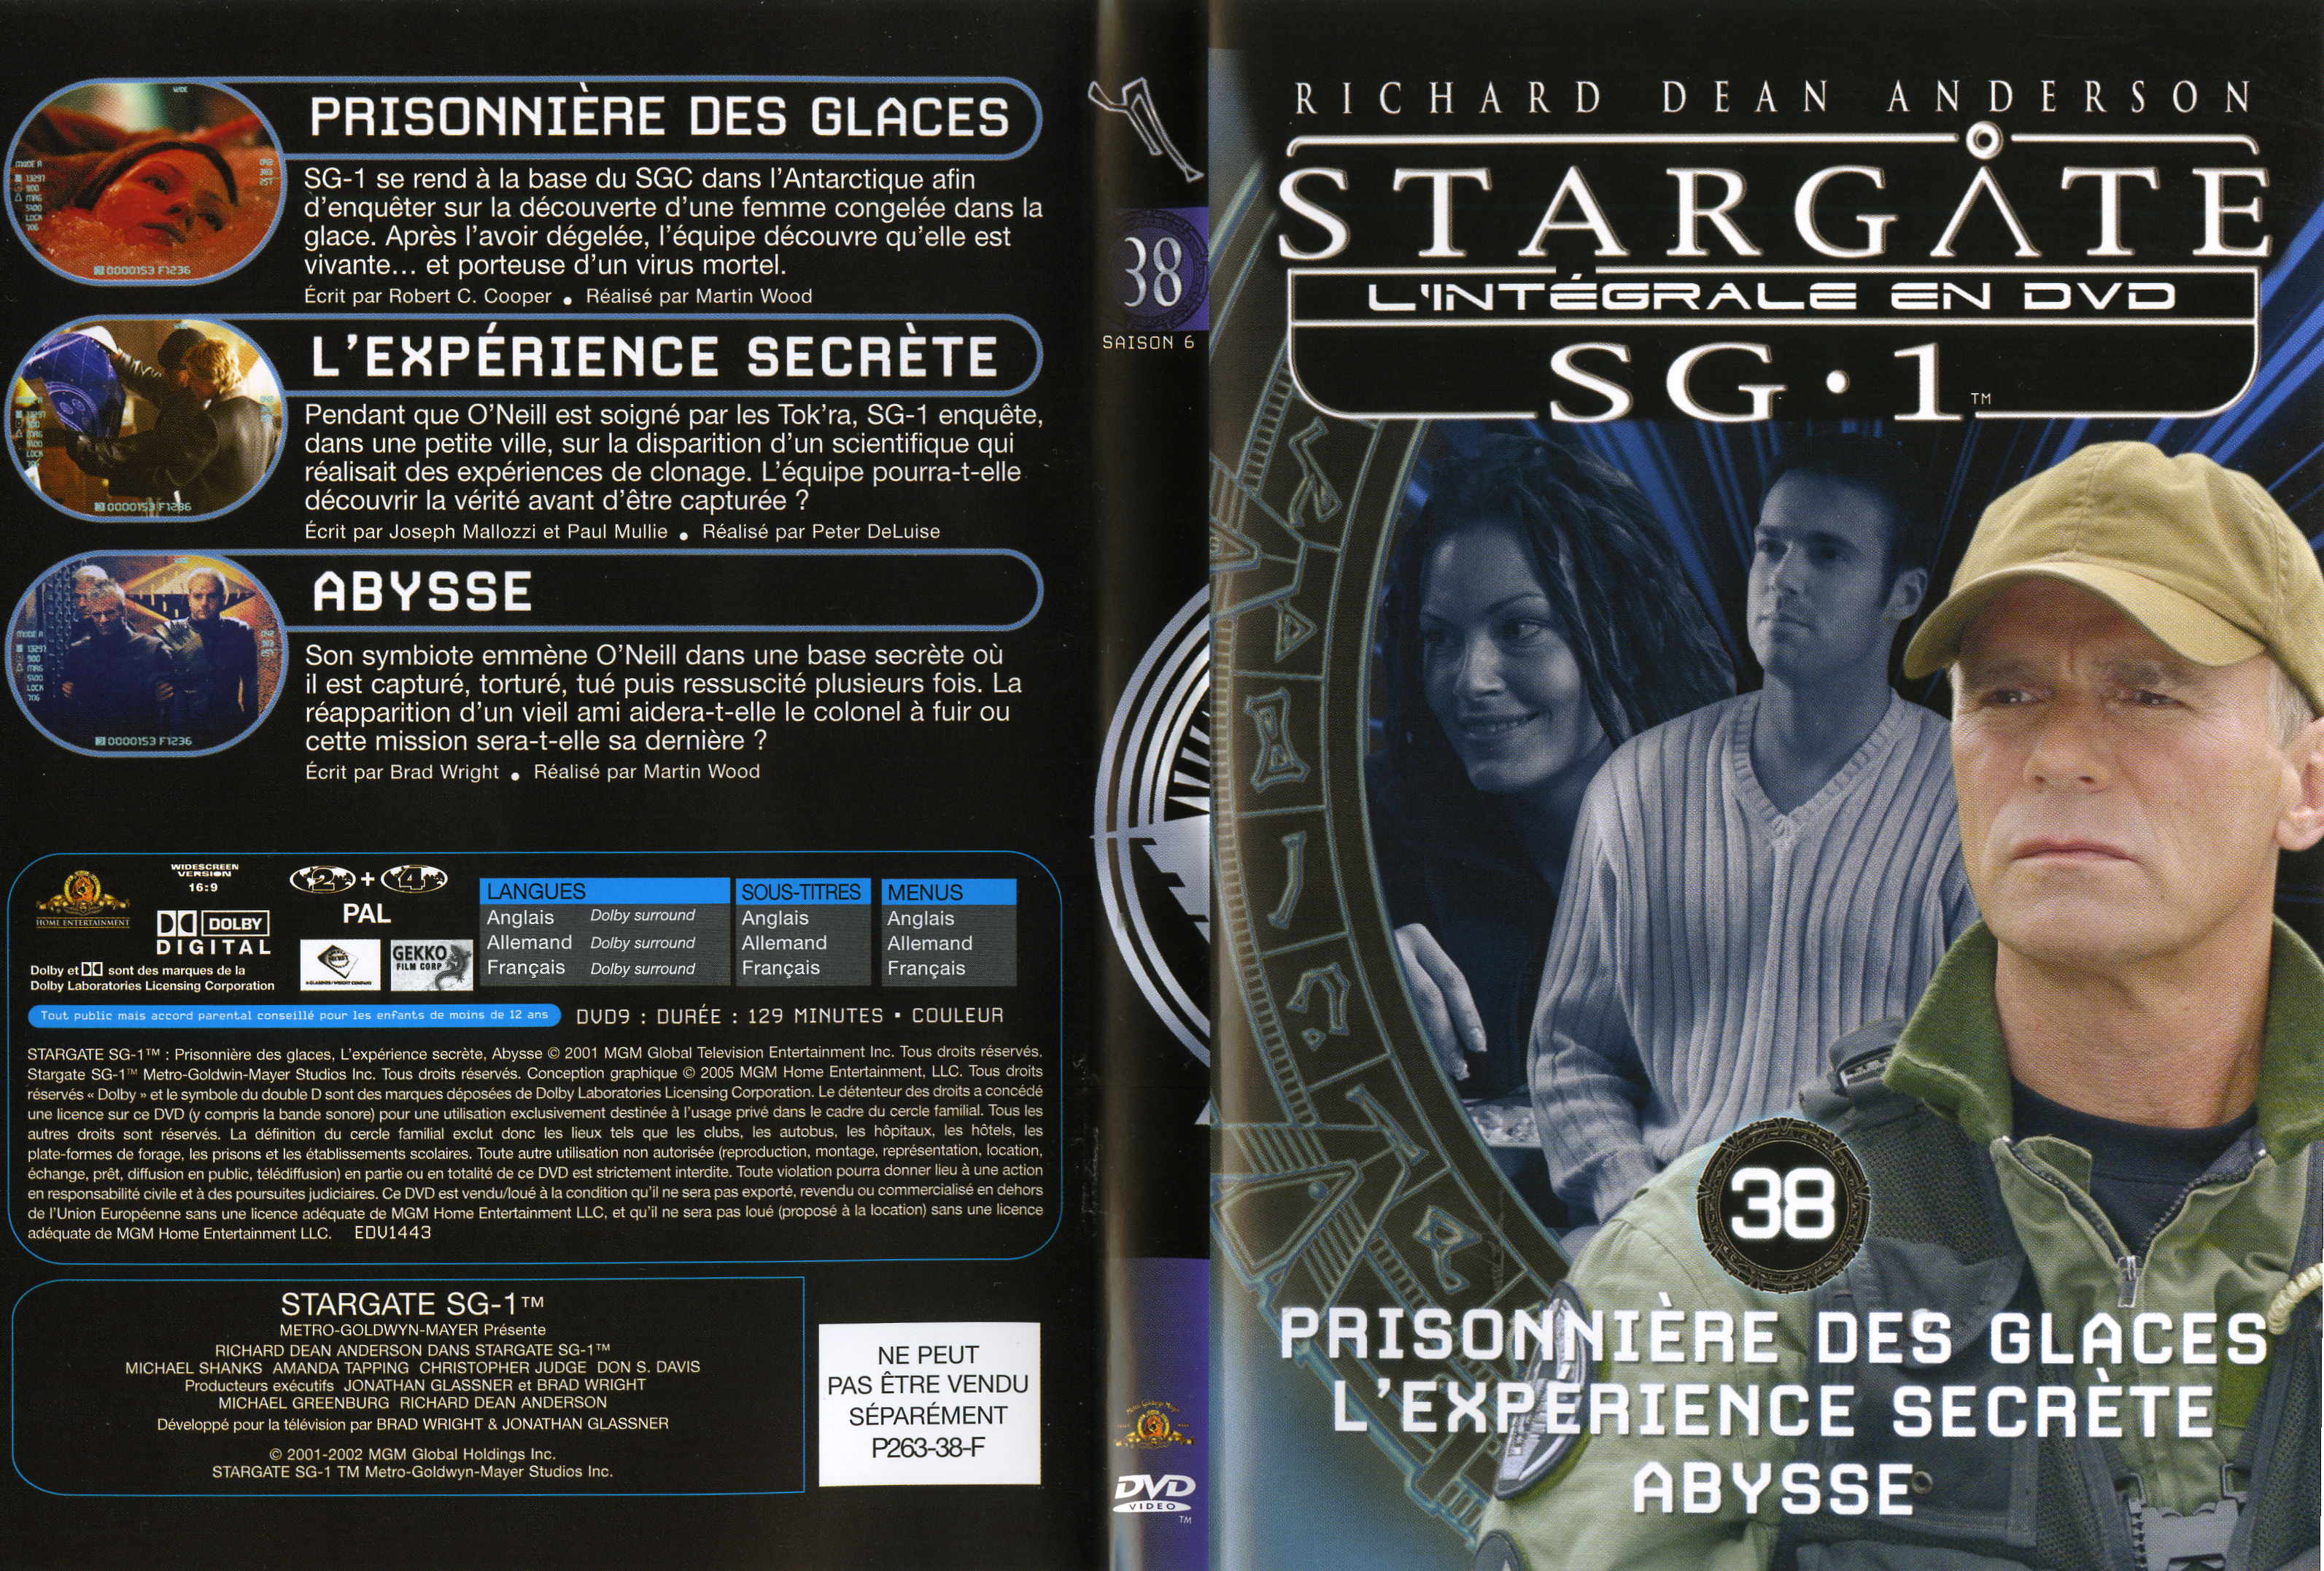 Jaquette DVD Stargate saison 6 vol 38